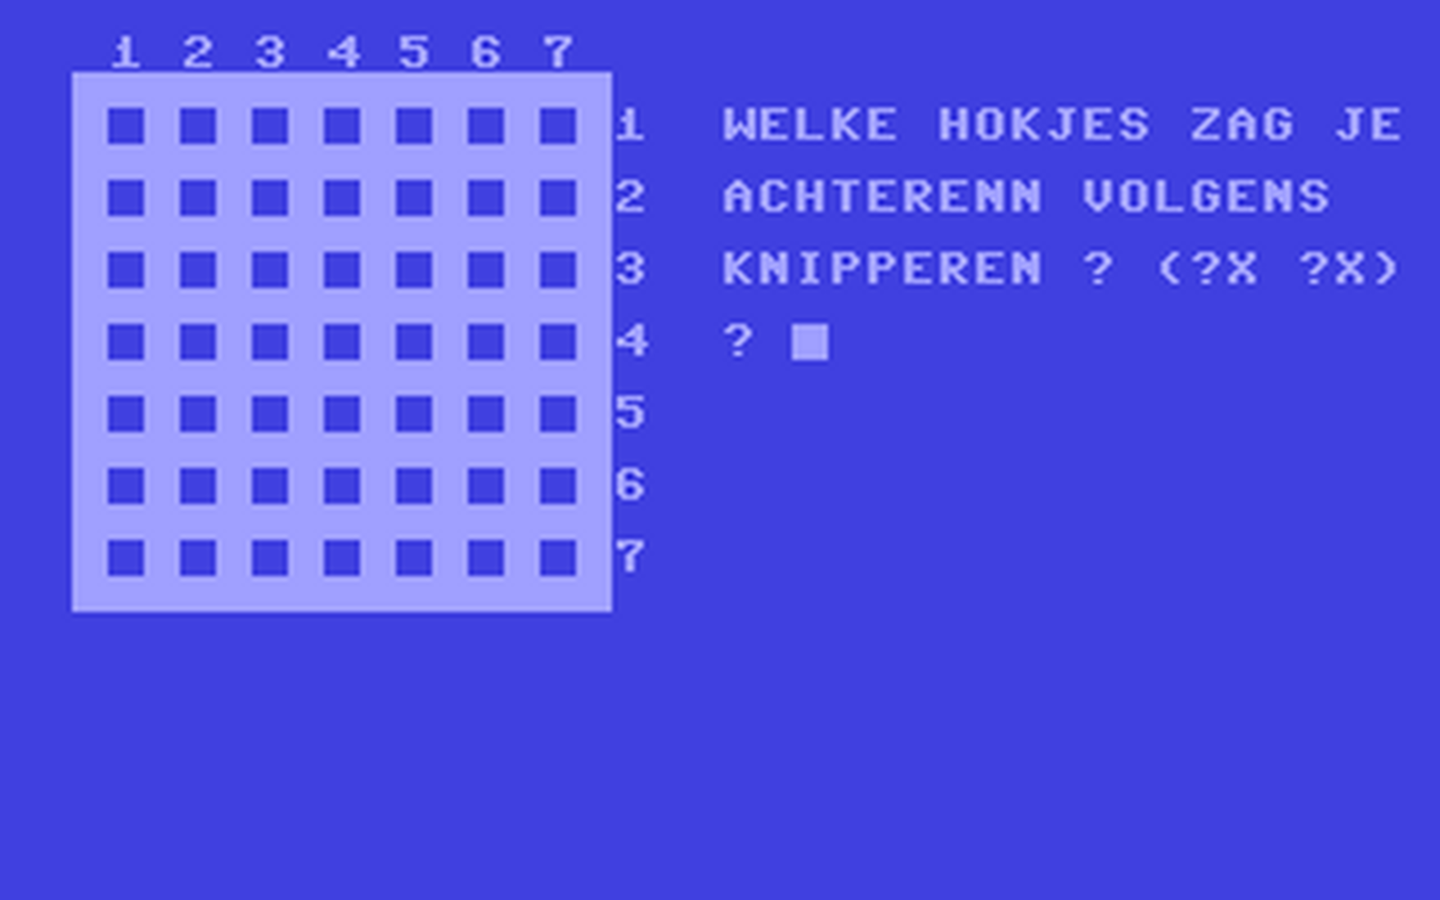 C64 GameBase Memory Commodore_Info 1985